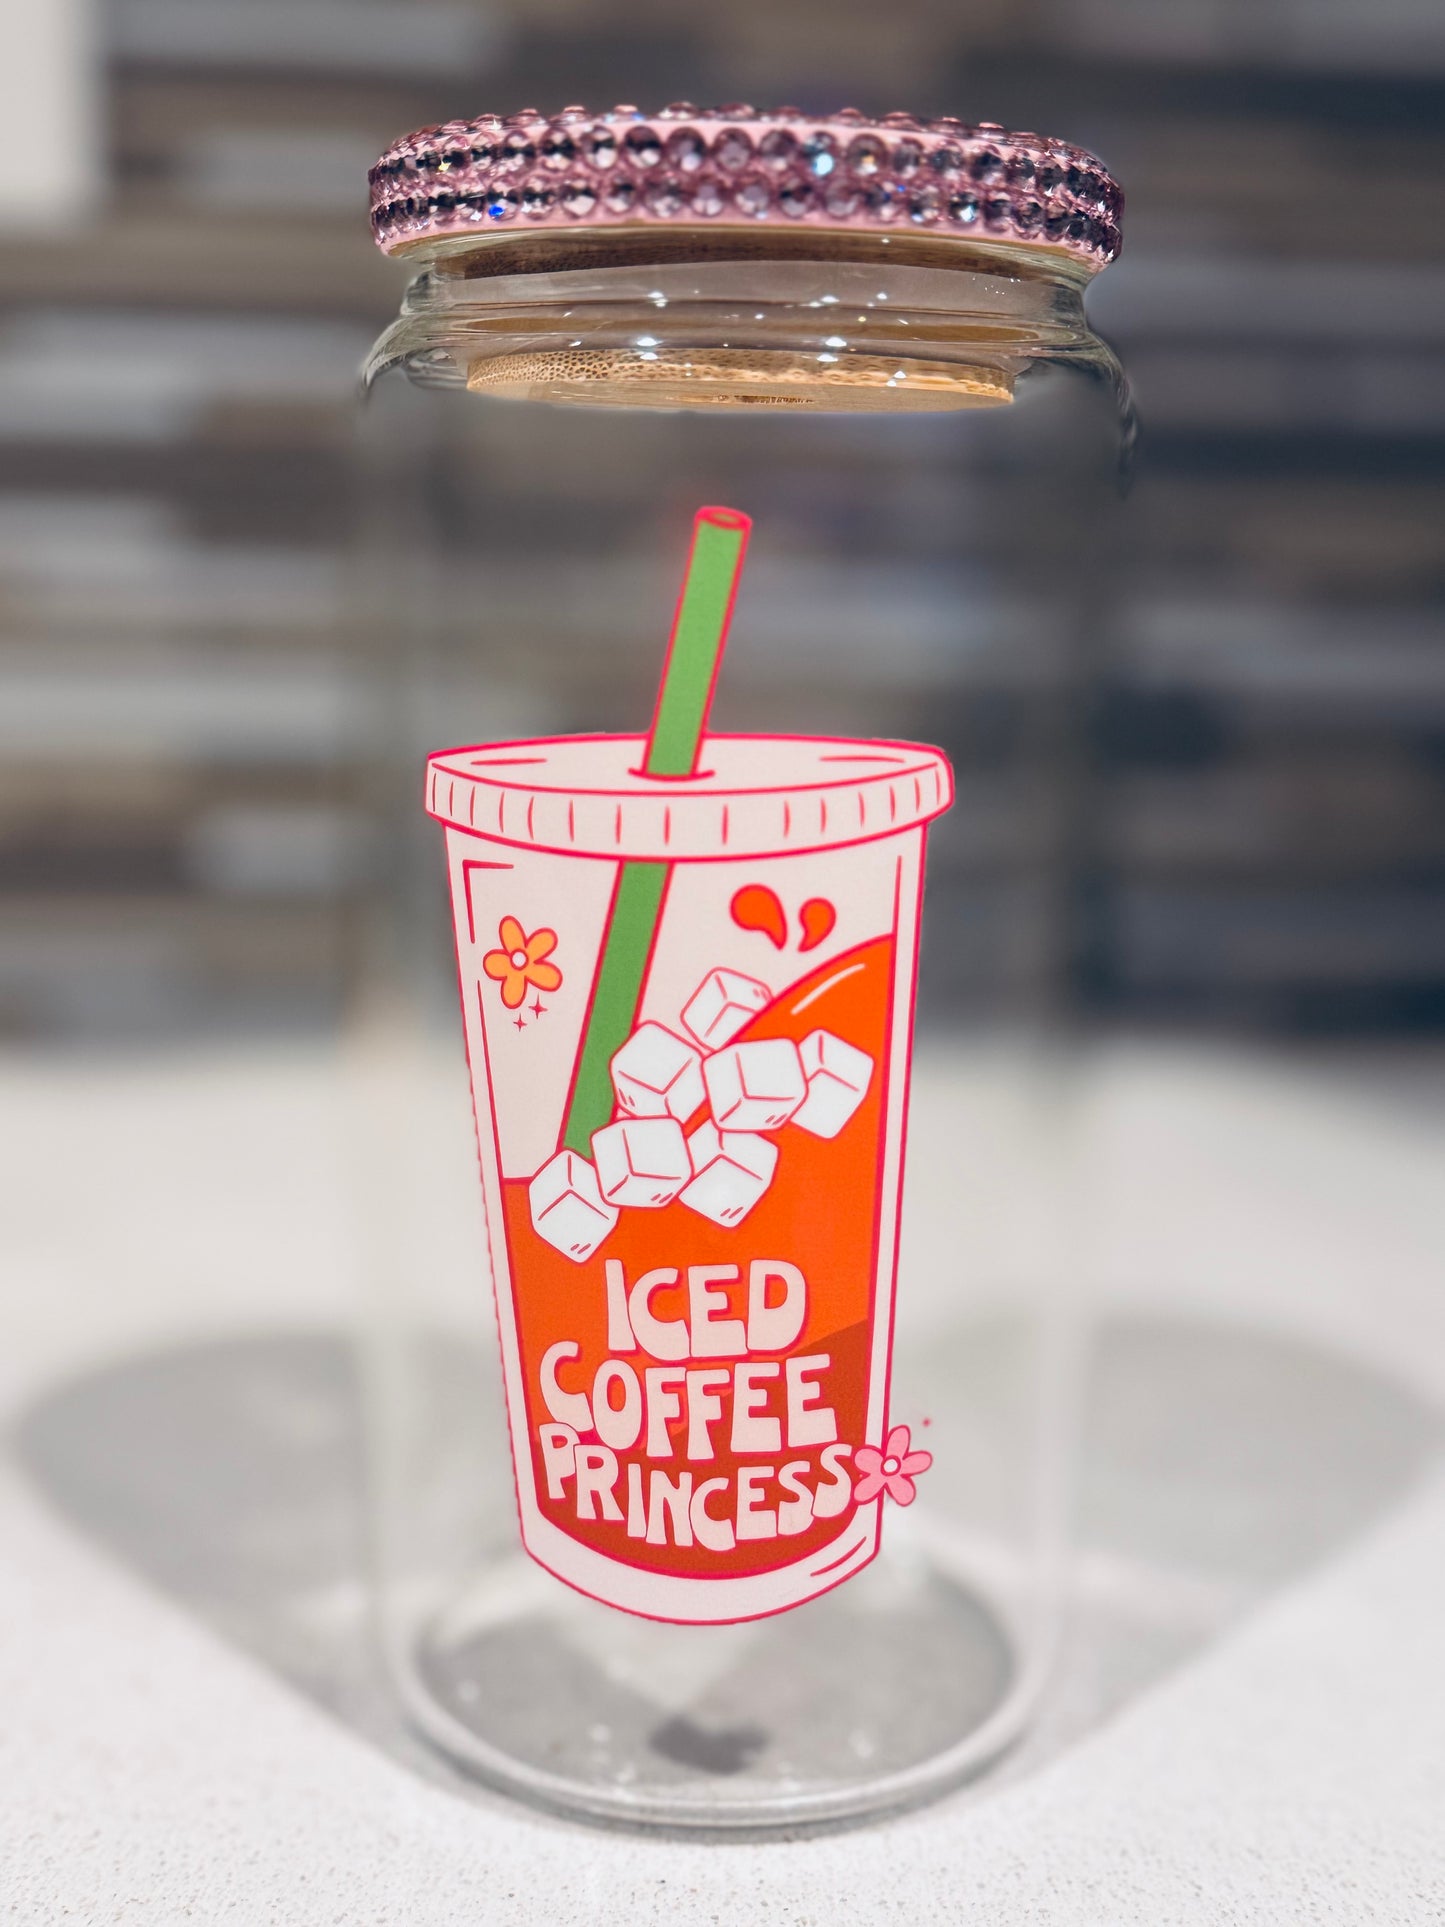 Iced Coffee Princess Glass Cup